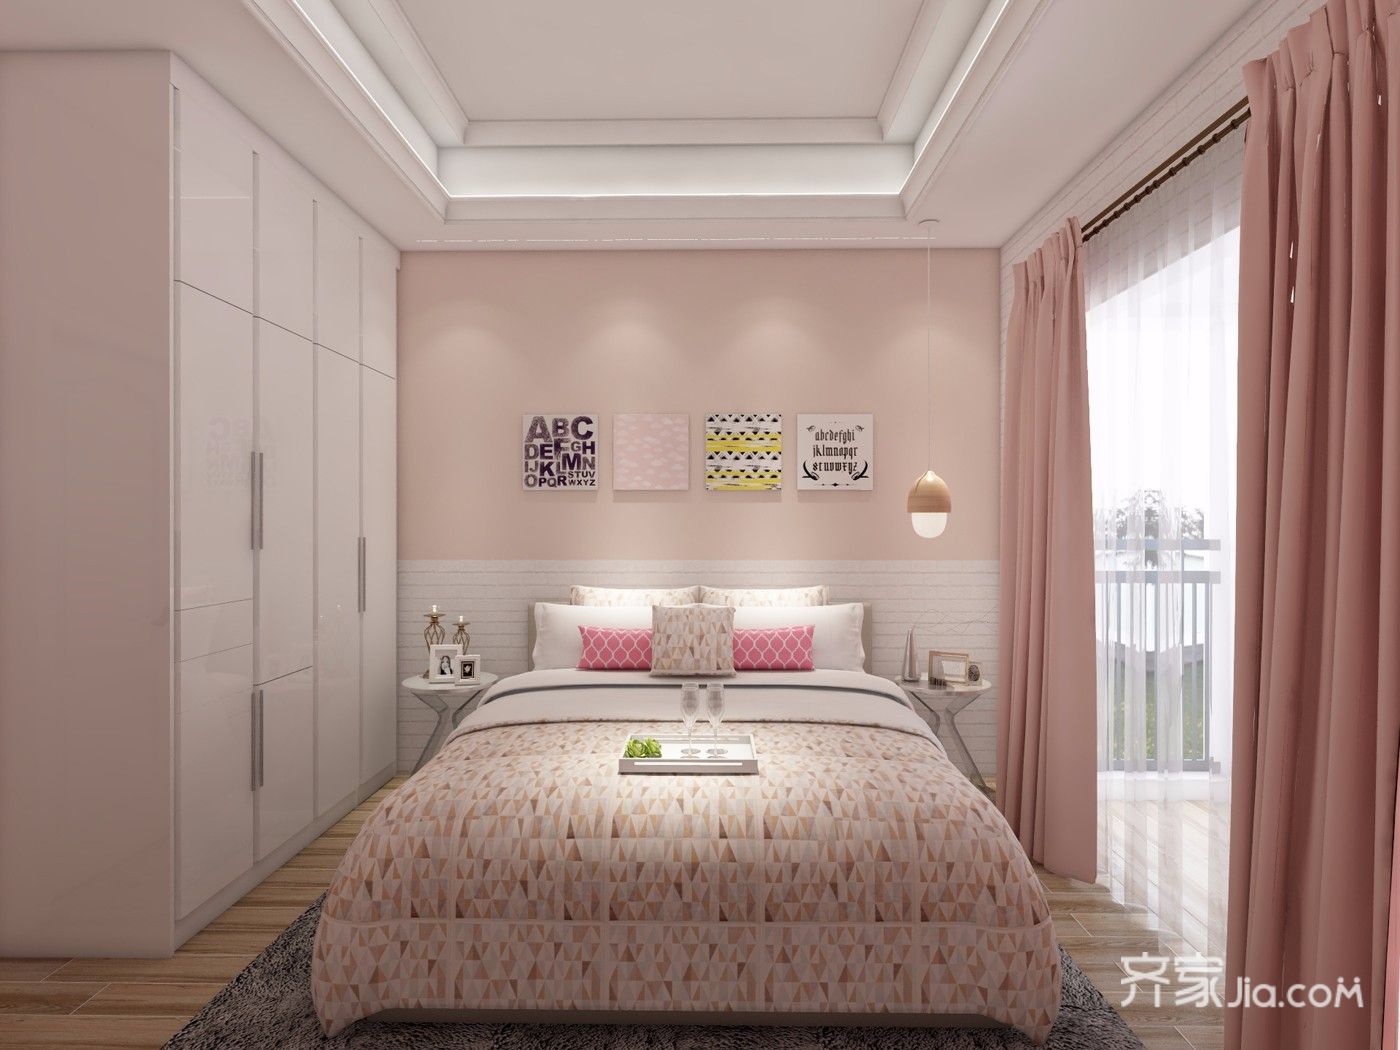 少女心满溢的粉色简约家卧室设计图